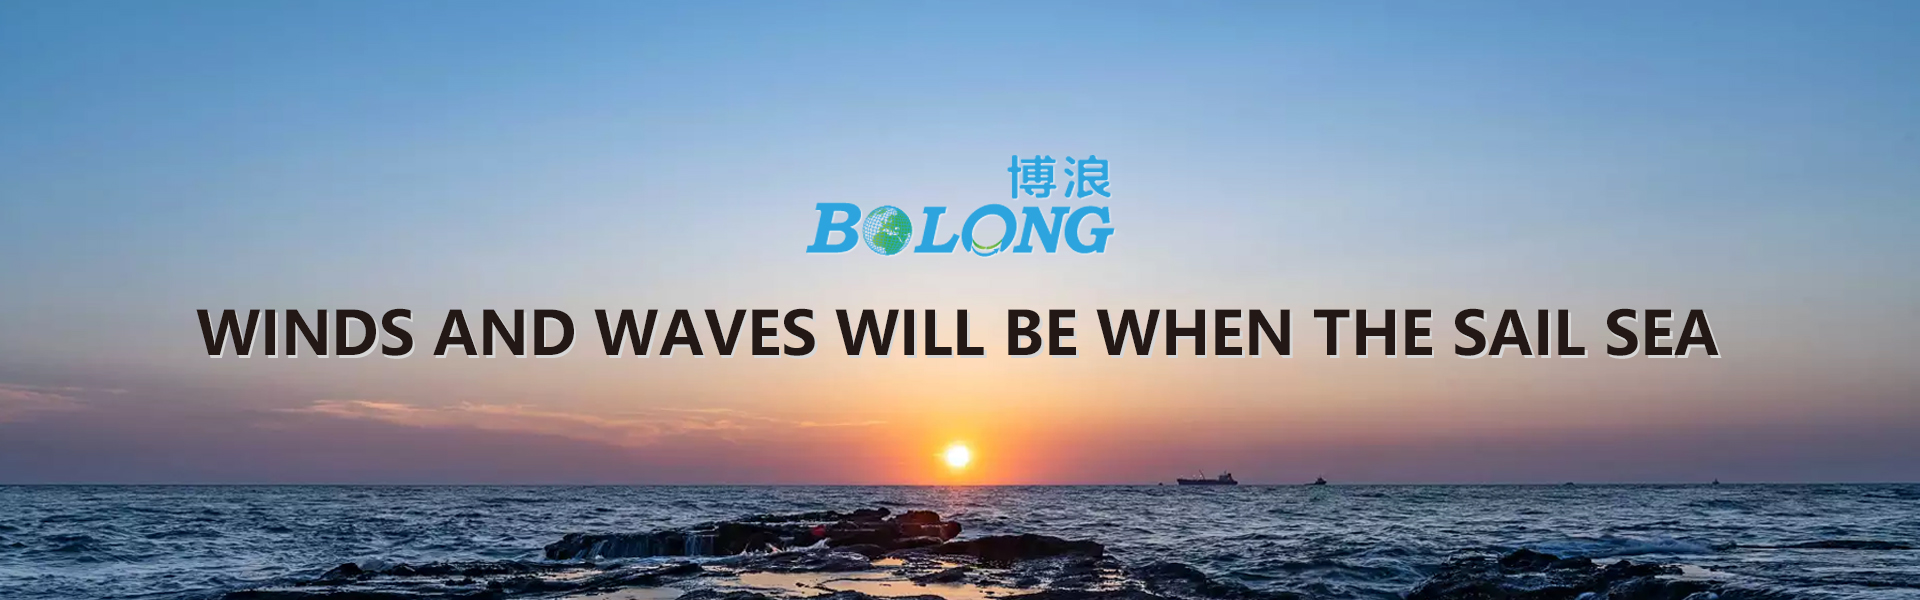 Shenzhen Bolong Technology Co., Ltd.